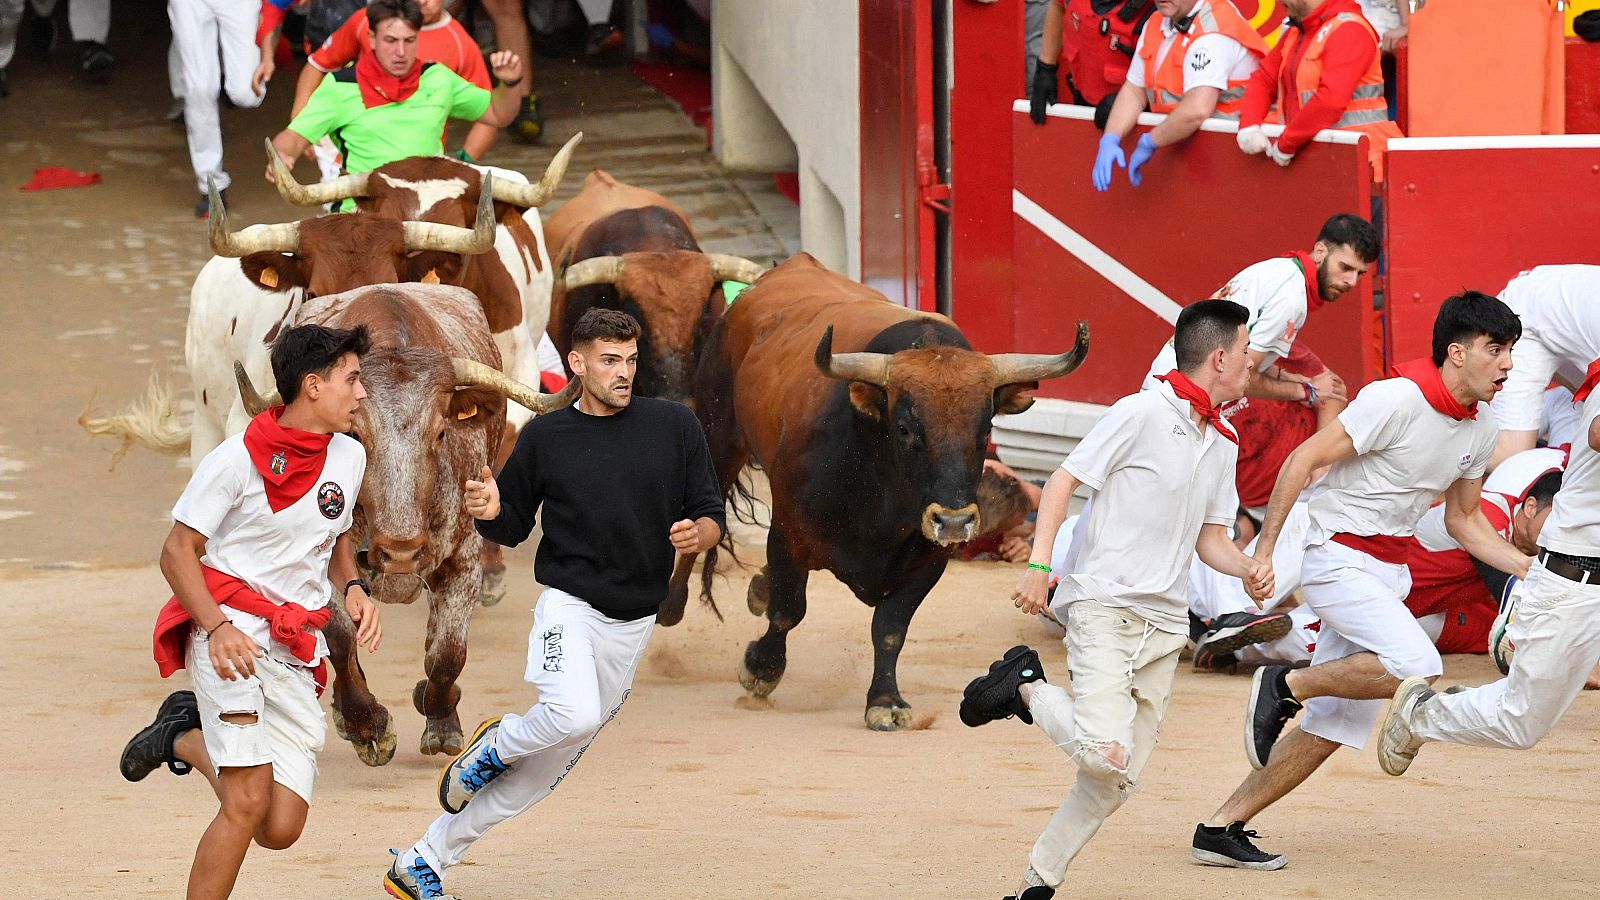 Los mticos toros de Miura cierran el ltimo encierro de San Fermn con una carrera emocionante y peligrosa